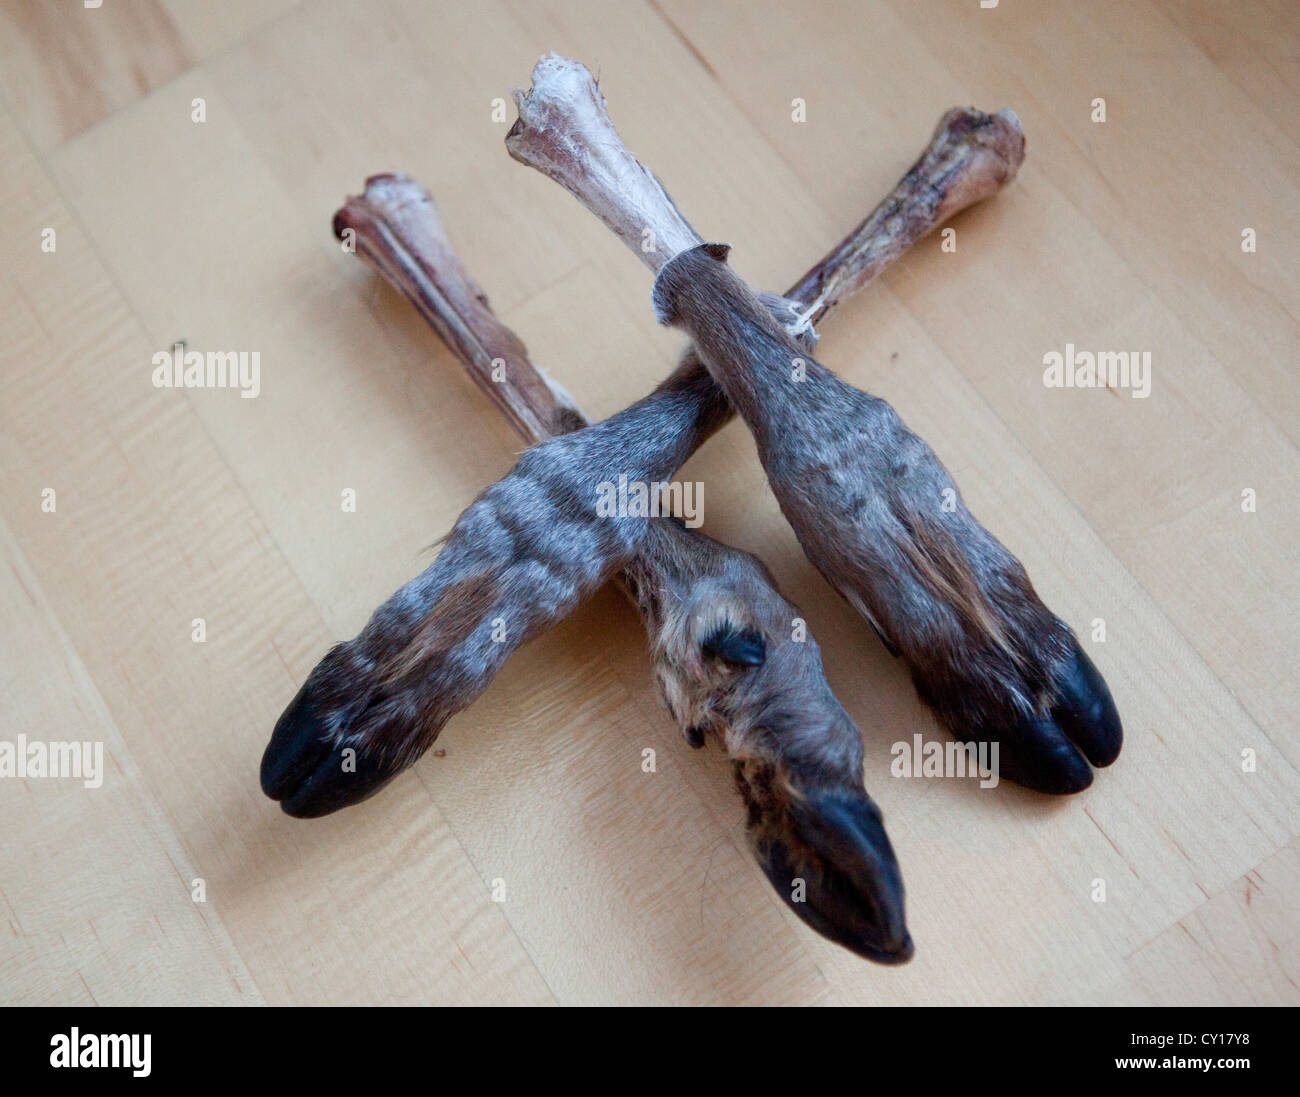 Les jambes de rennes sont des jouets pour les enfants en Finlande Banque D'Images